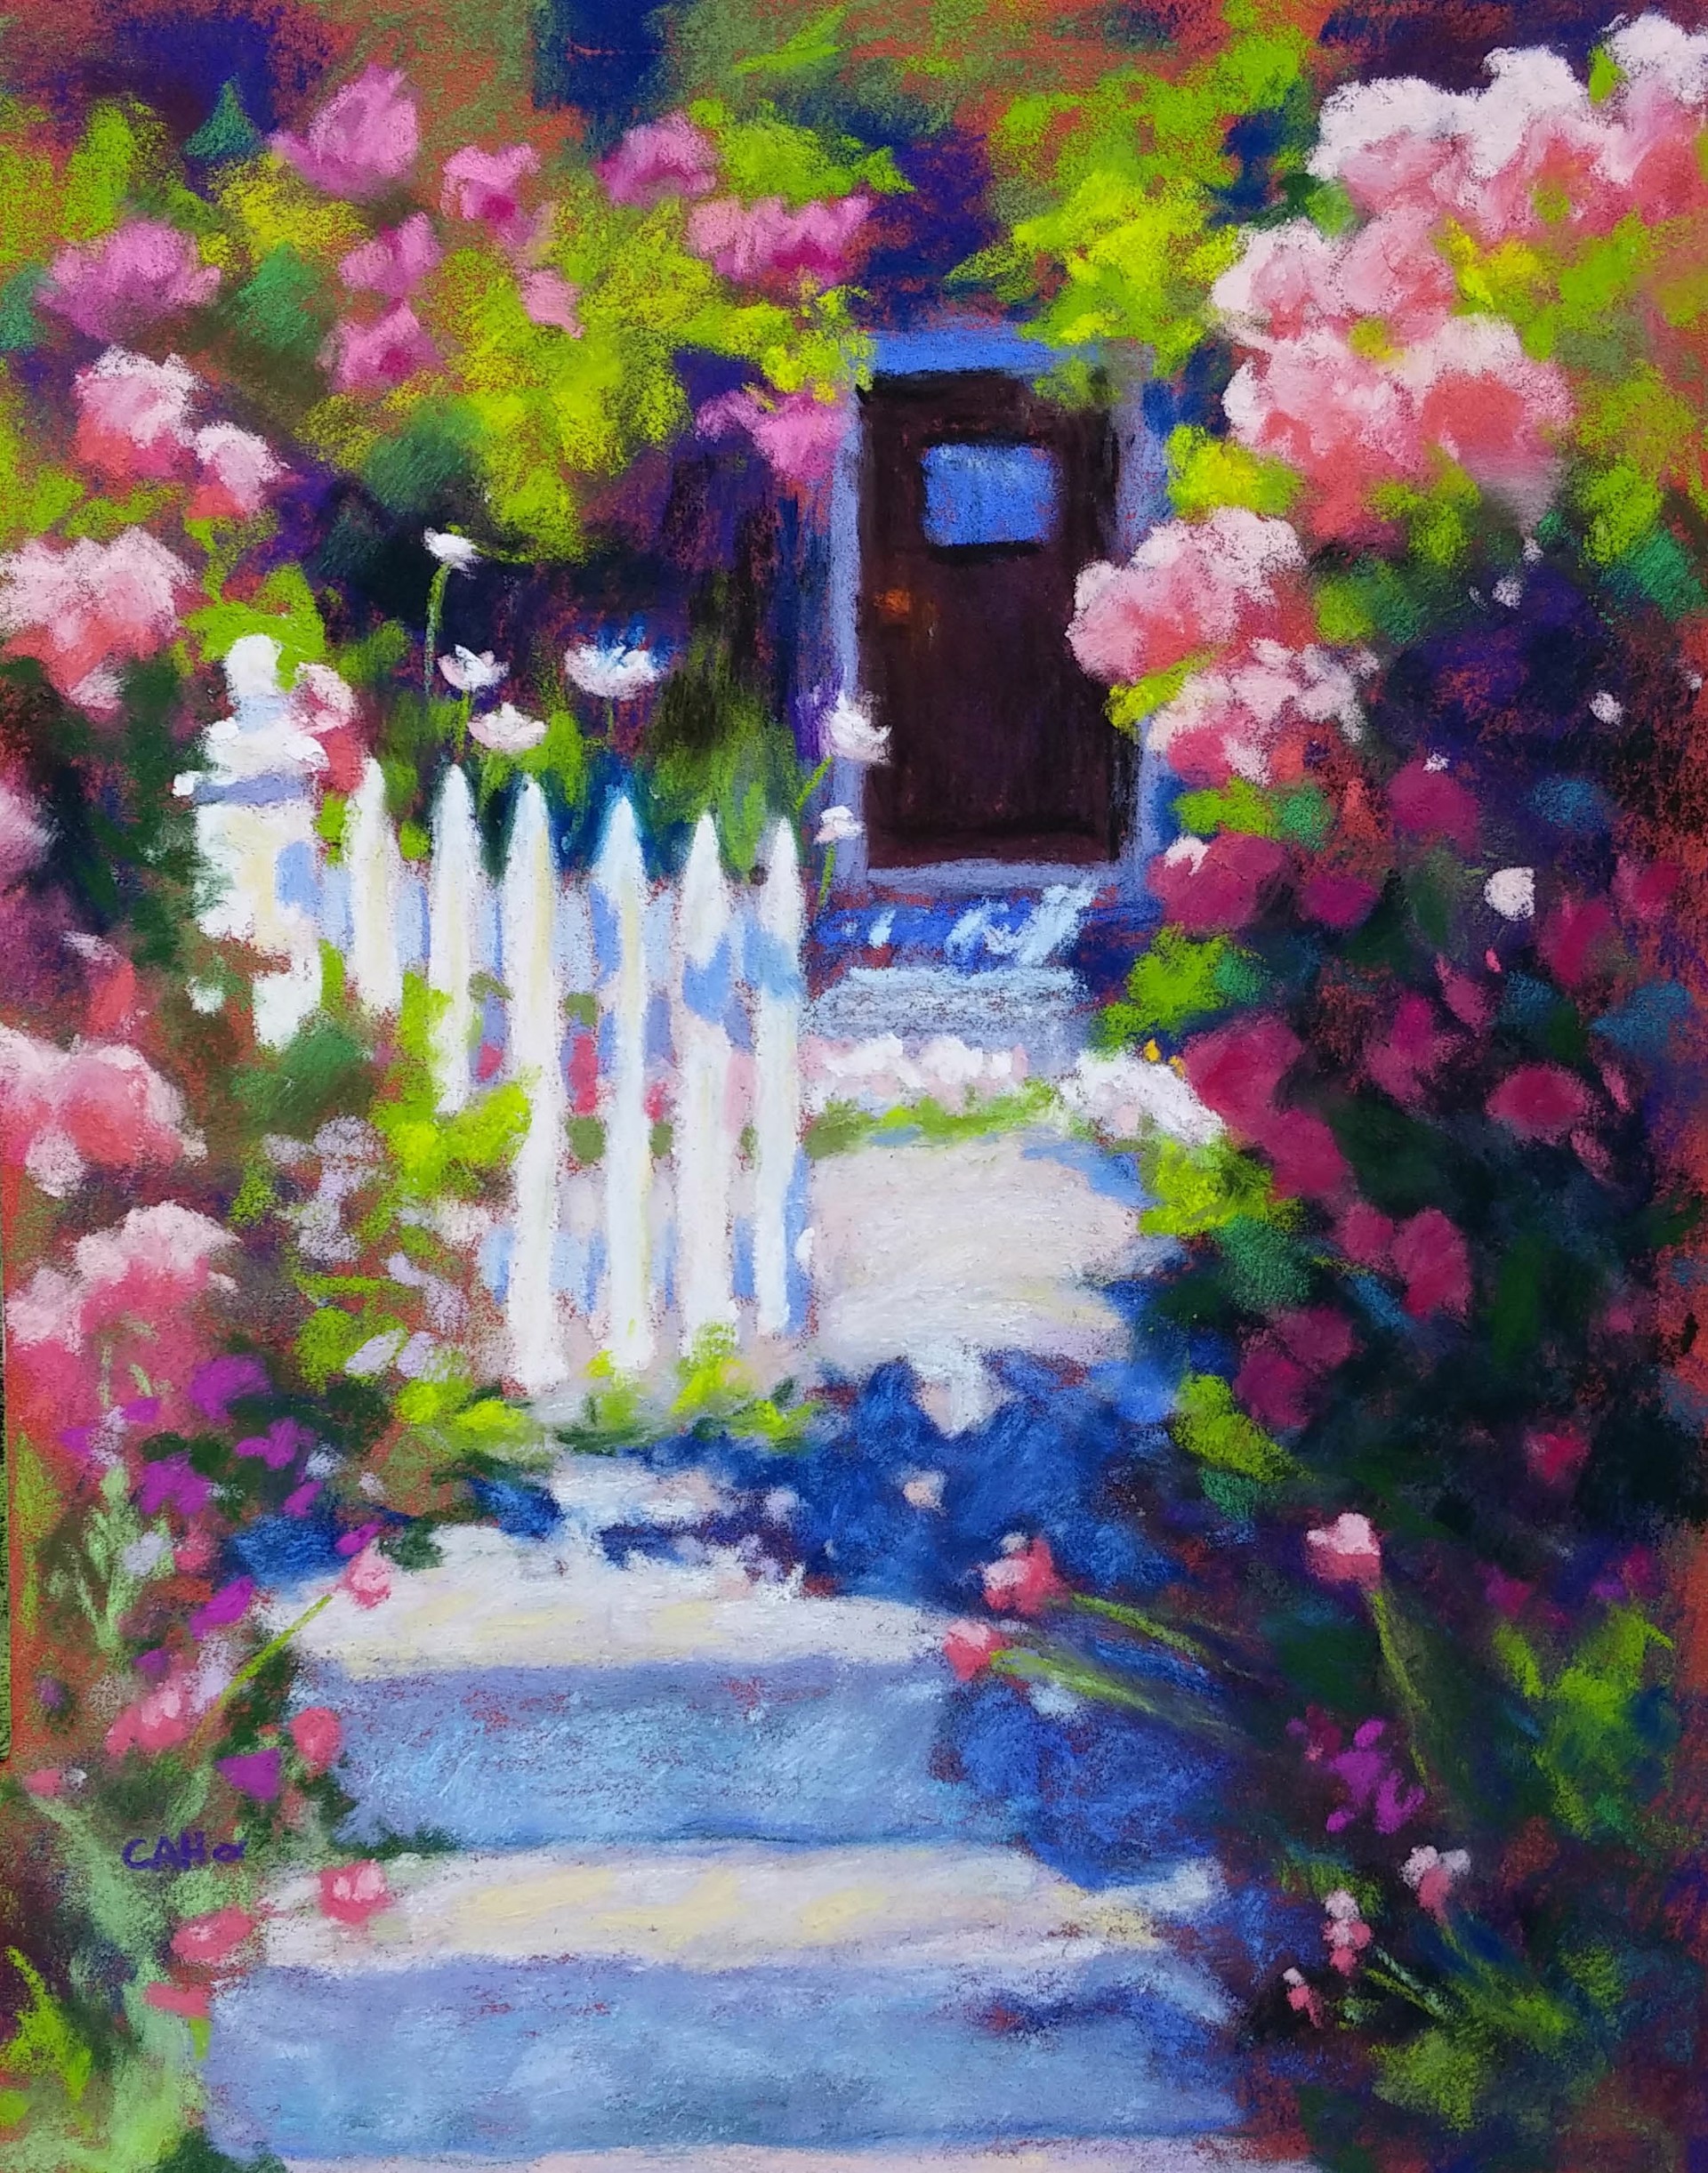 Garden Gate by Cheryl A. Hufnagel